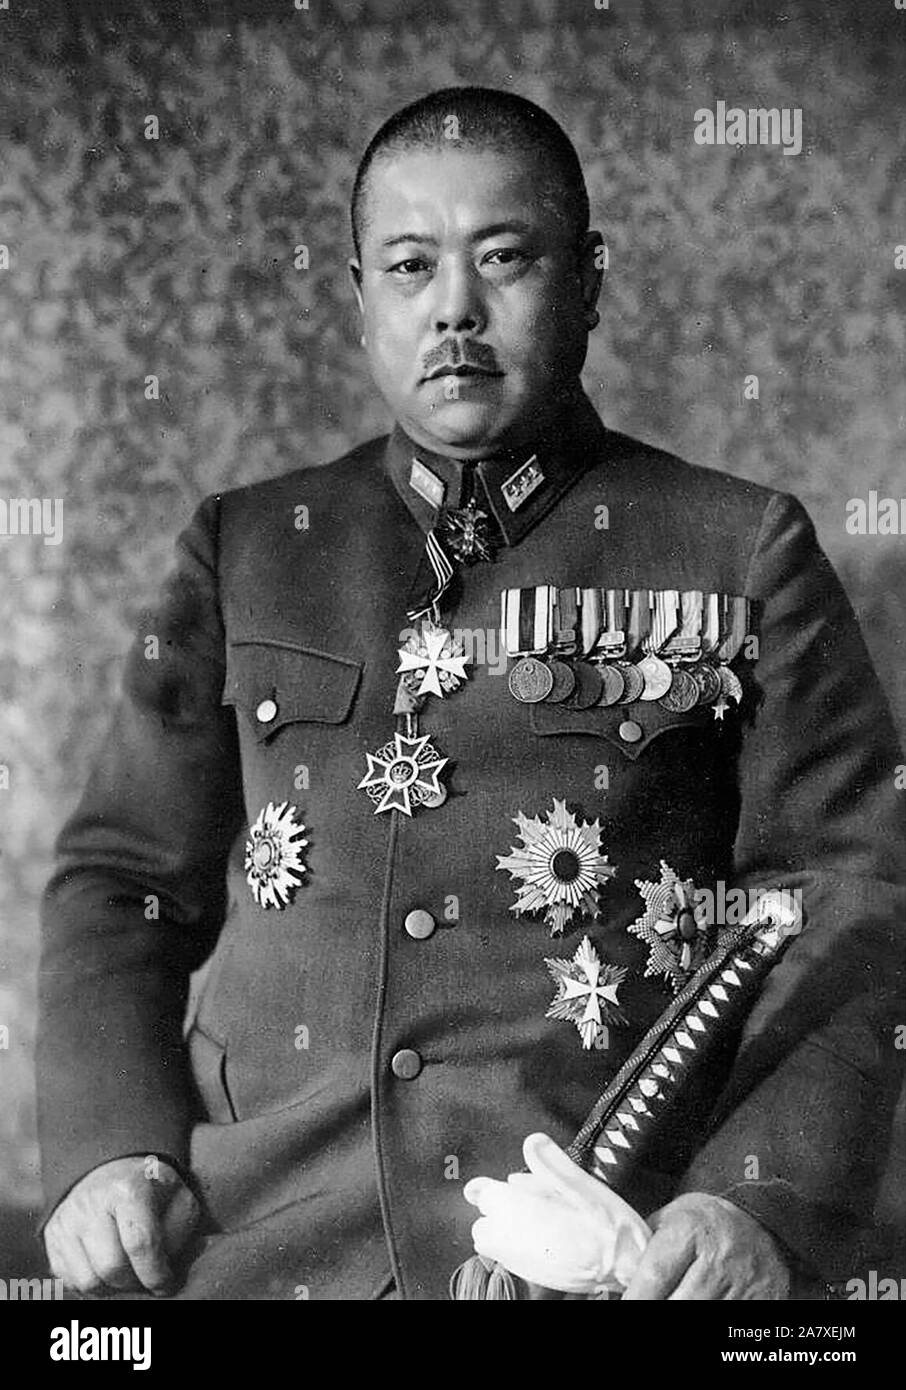 Portrait de Tomoyuki Yamashita, Japonais général de l'Armée impériale japonaise durant la Seconde Guerre mondiale. Yamashita a conduit les forces japonaises lors de l'invasion de la Malaisie et de la bataille de Singapour, avec sa réalisation de la conquête de la Malaisie et Singapour en 70 jours, ce qui lui a valu le surnom le tigre de Malaya. 1940 Banque D'Images